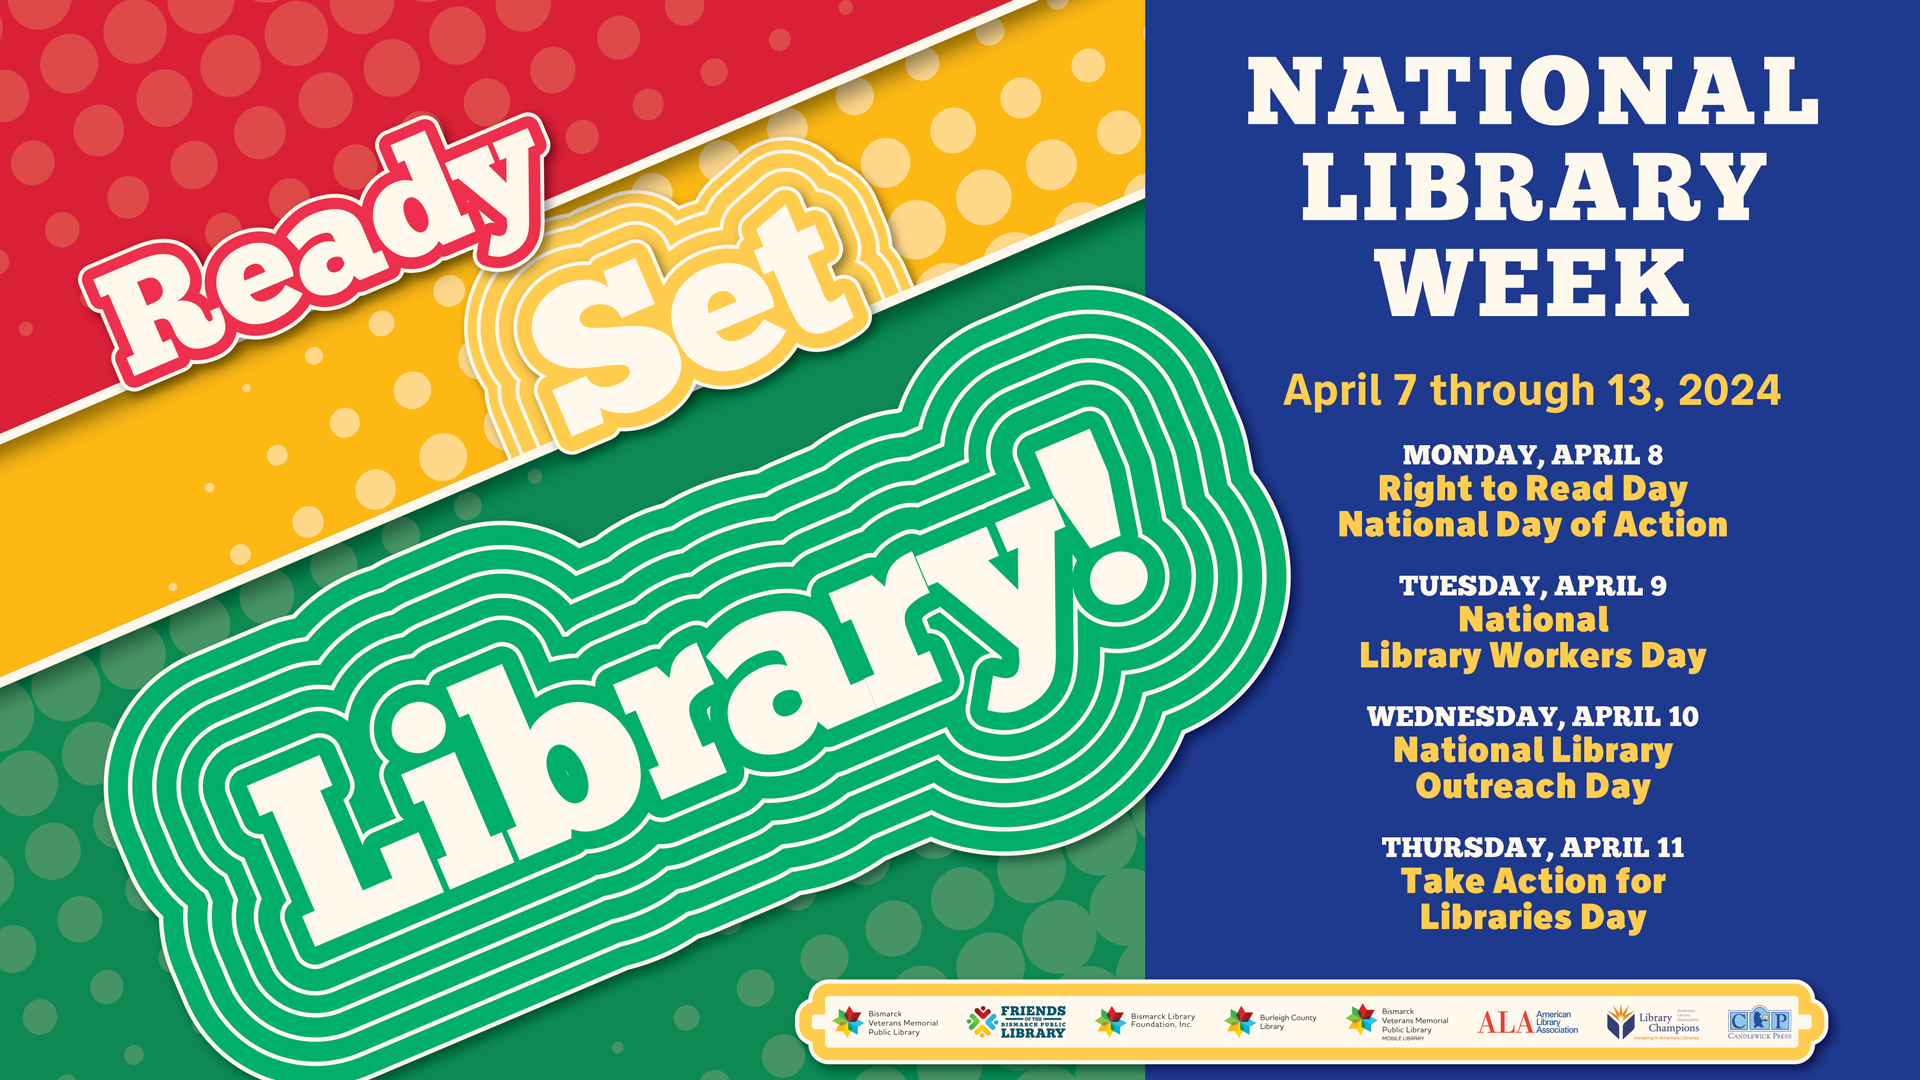 NATIONAL LIBRARY WEEK @ Bismarck Veterans Memorial Library